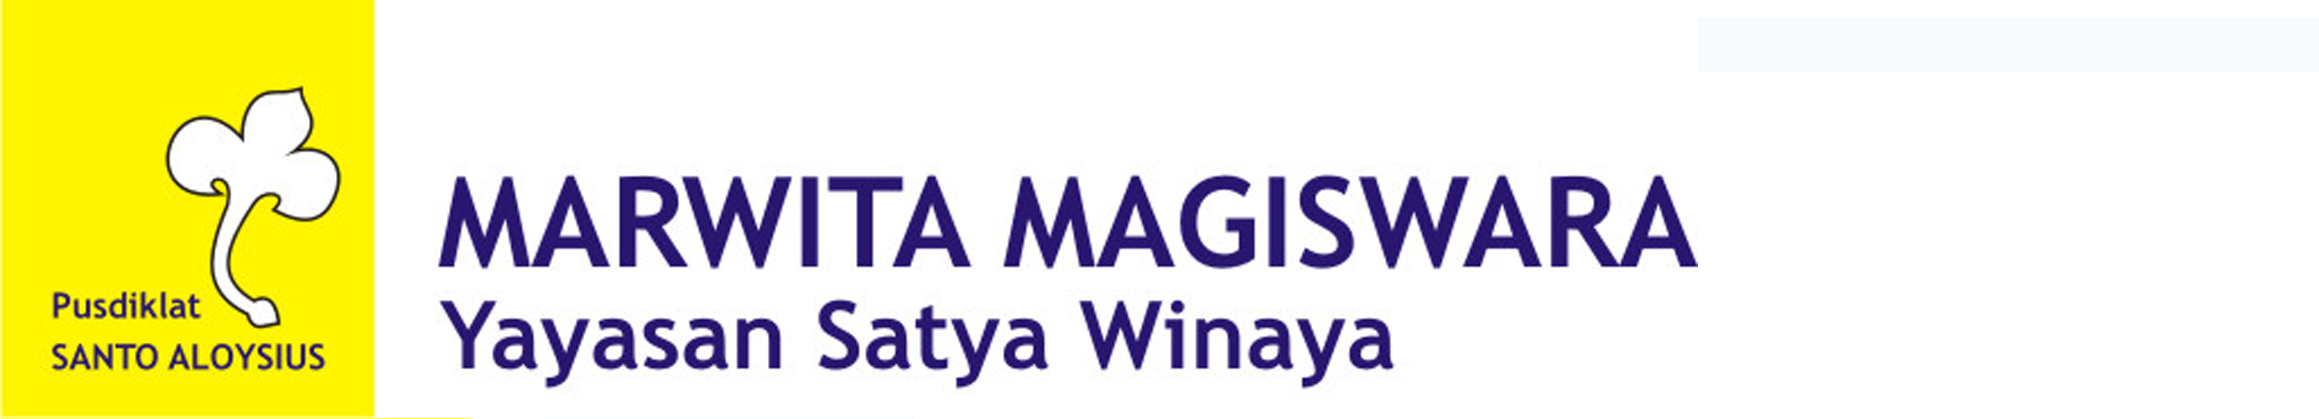 Marwita Magiswara